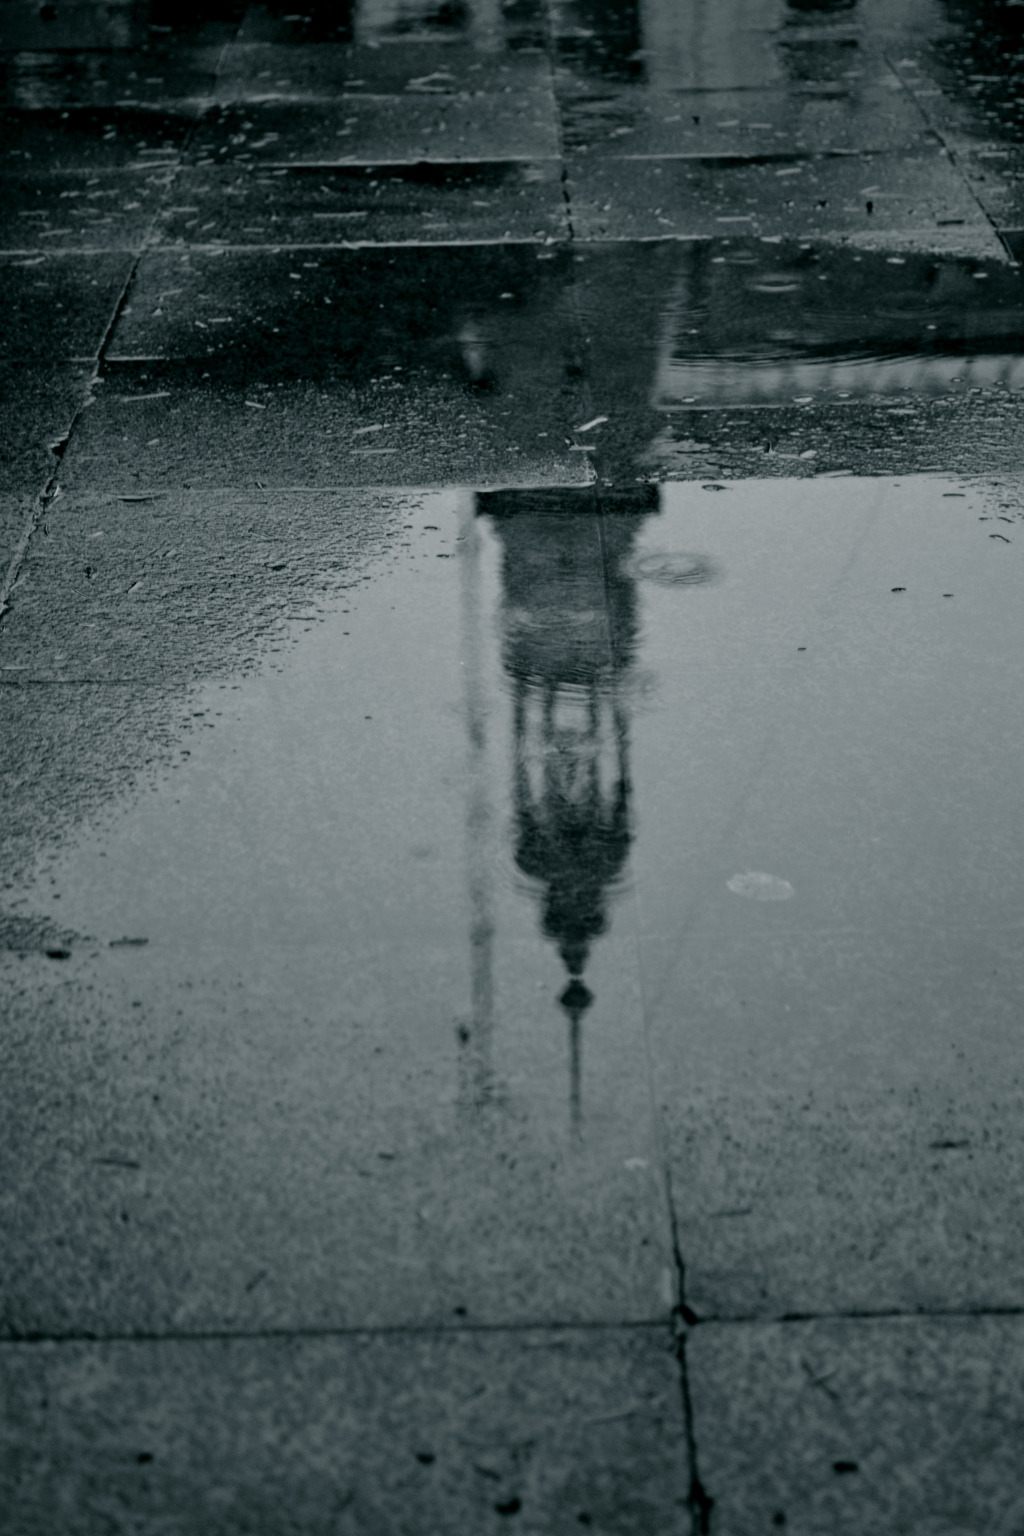 lluvia reflejo blanco y negro ciudad reflex en blanco y negro rain